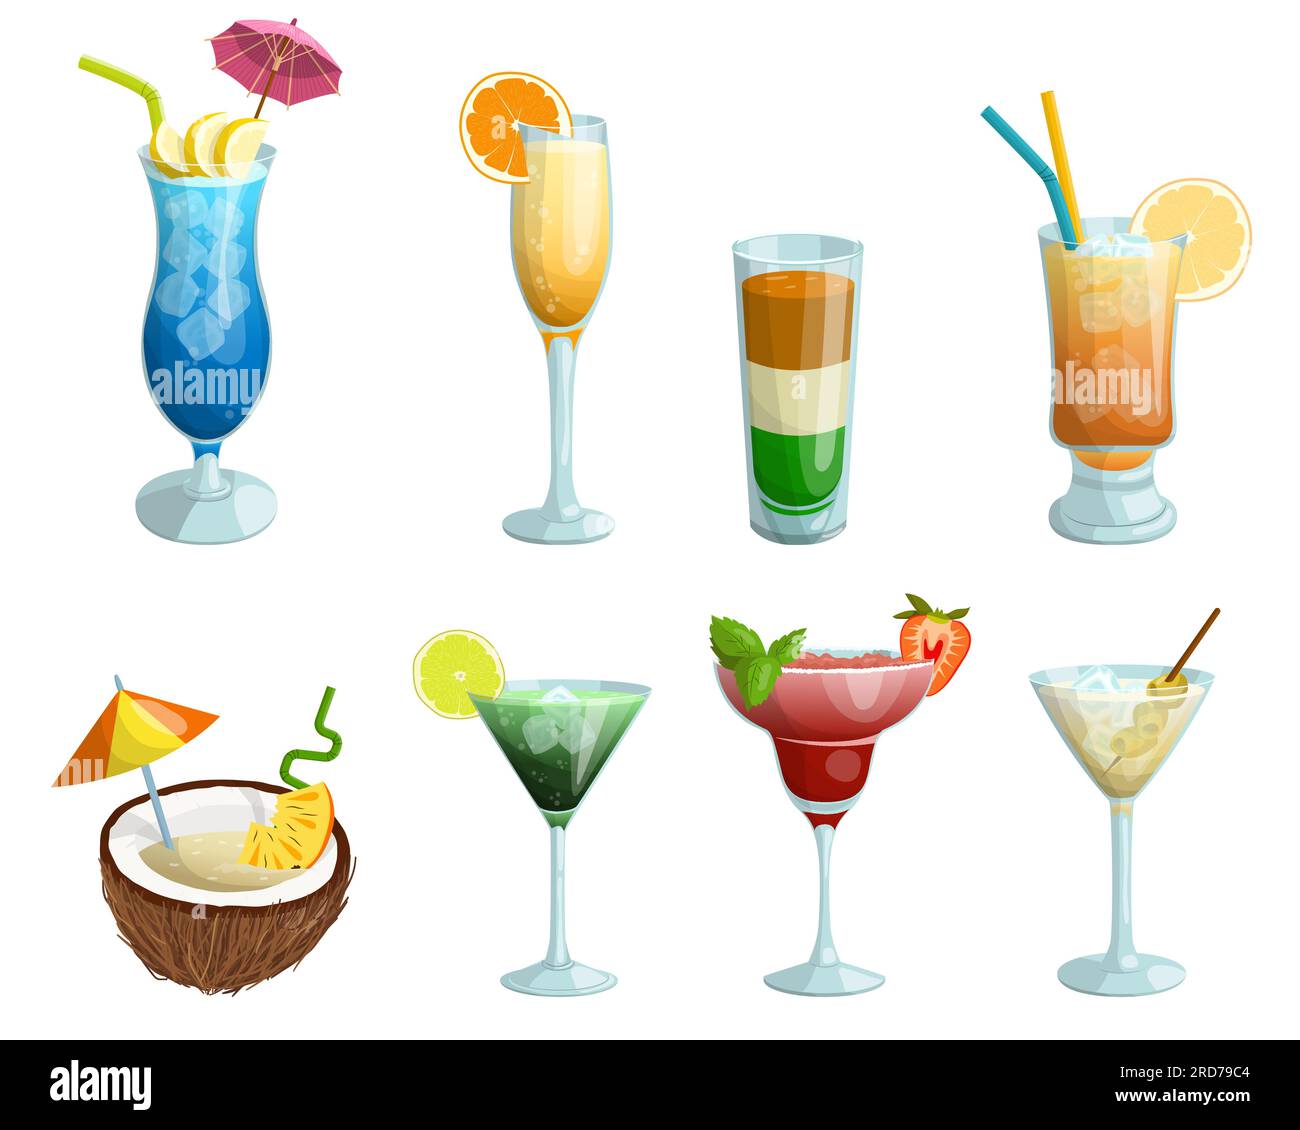 Un set di cocktail tropicali. Laguna blu, mimosa, pina colada, martini, ecc. Illustrazione vettoriale su sfondo bianco Illustrazione Vettoriale